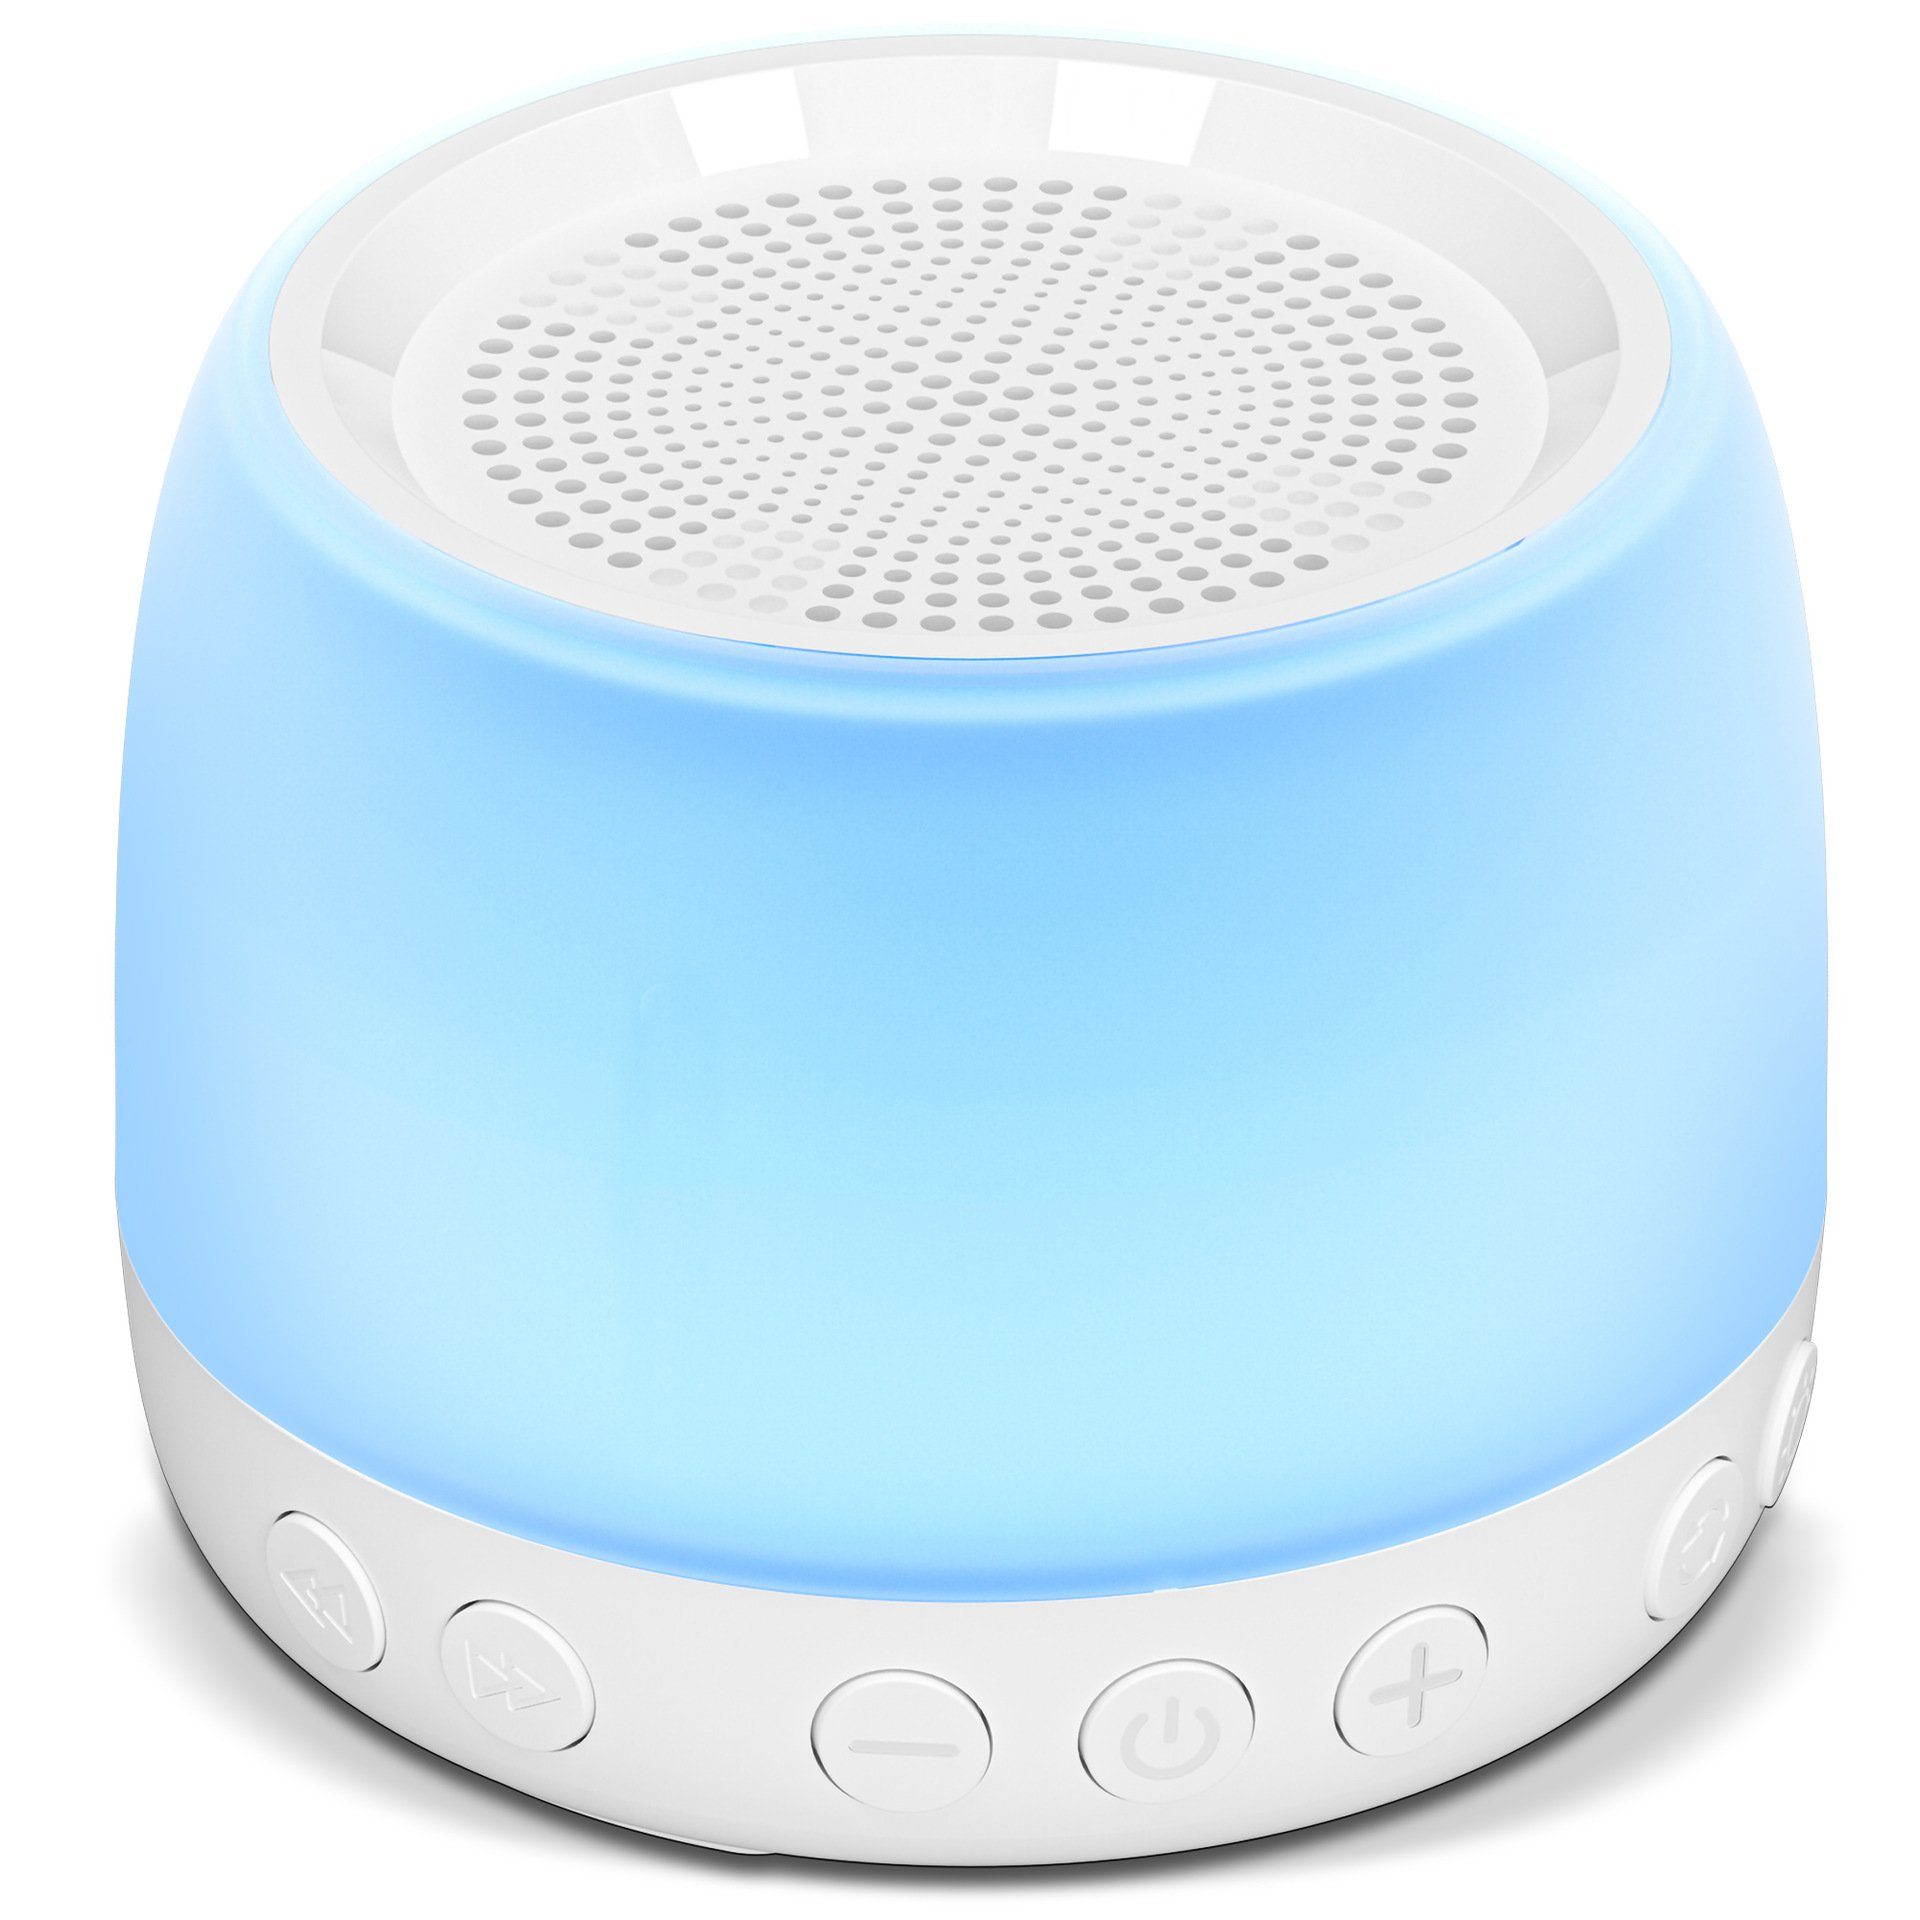 Einschlafhilfe - Machine Lautsprecher (mit Geräusche,Tragbarkeit) 3 XDOVET Schlaftherapie Baby Noise Sound Nachtlicht,Beruhigende White